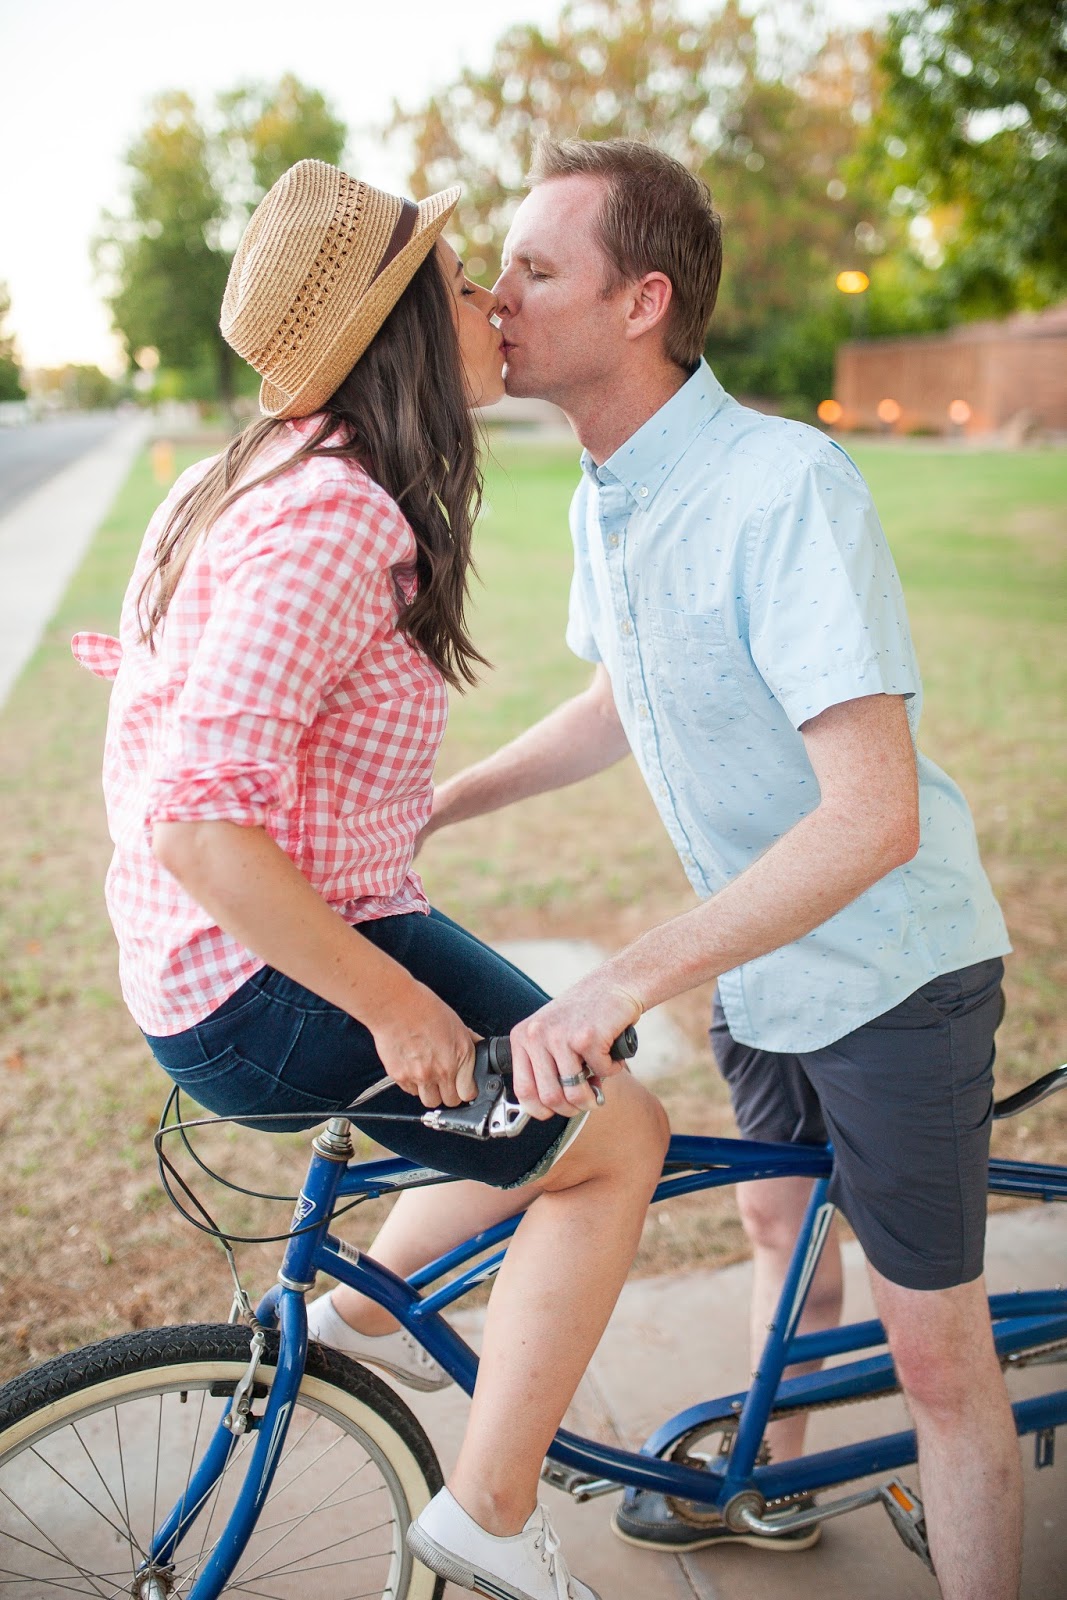 Cute couple on a bike. 